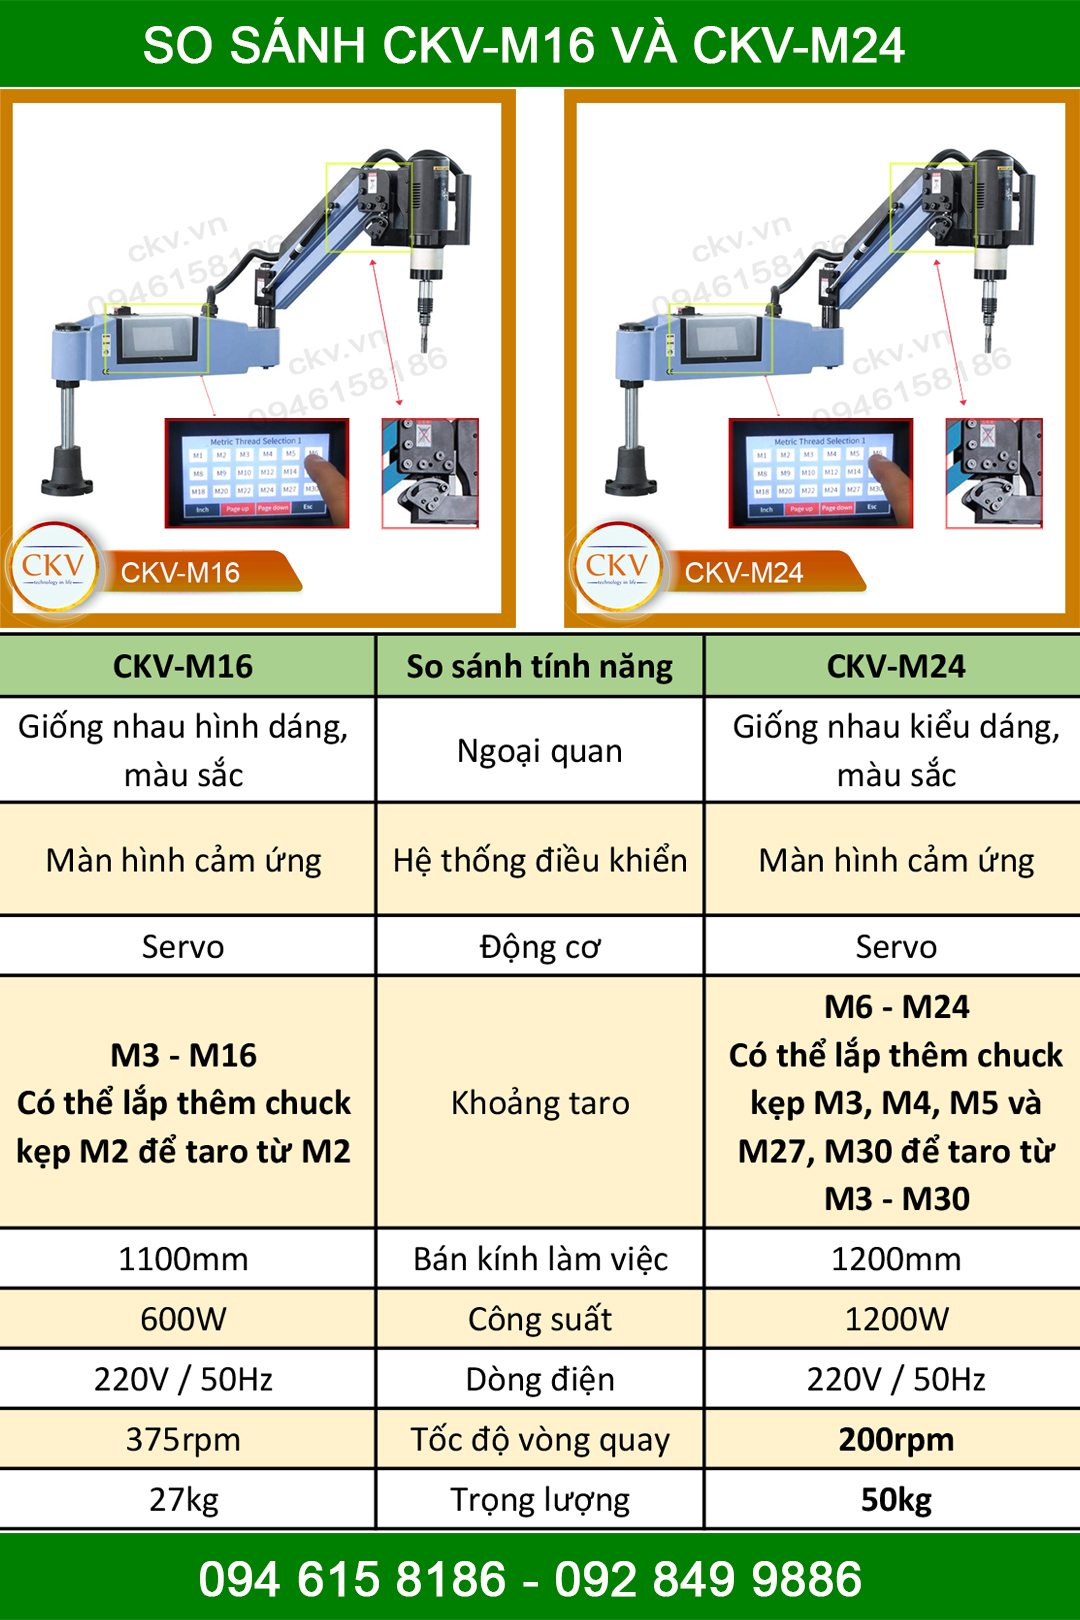 So sánh máy taro điện CKV-M16 và CKV-M24